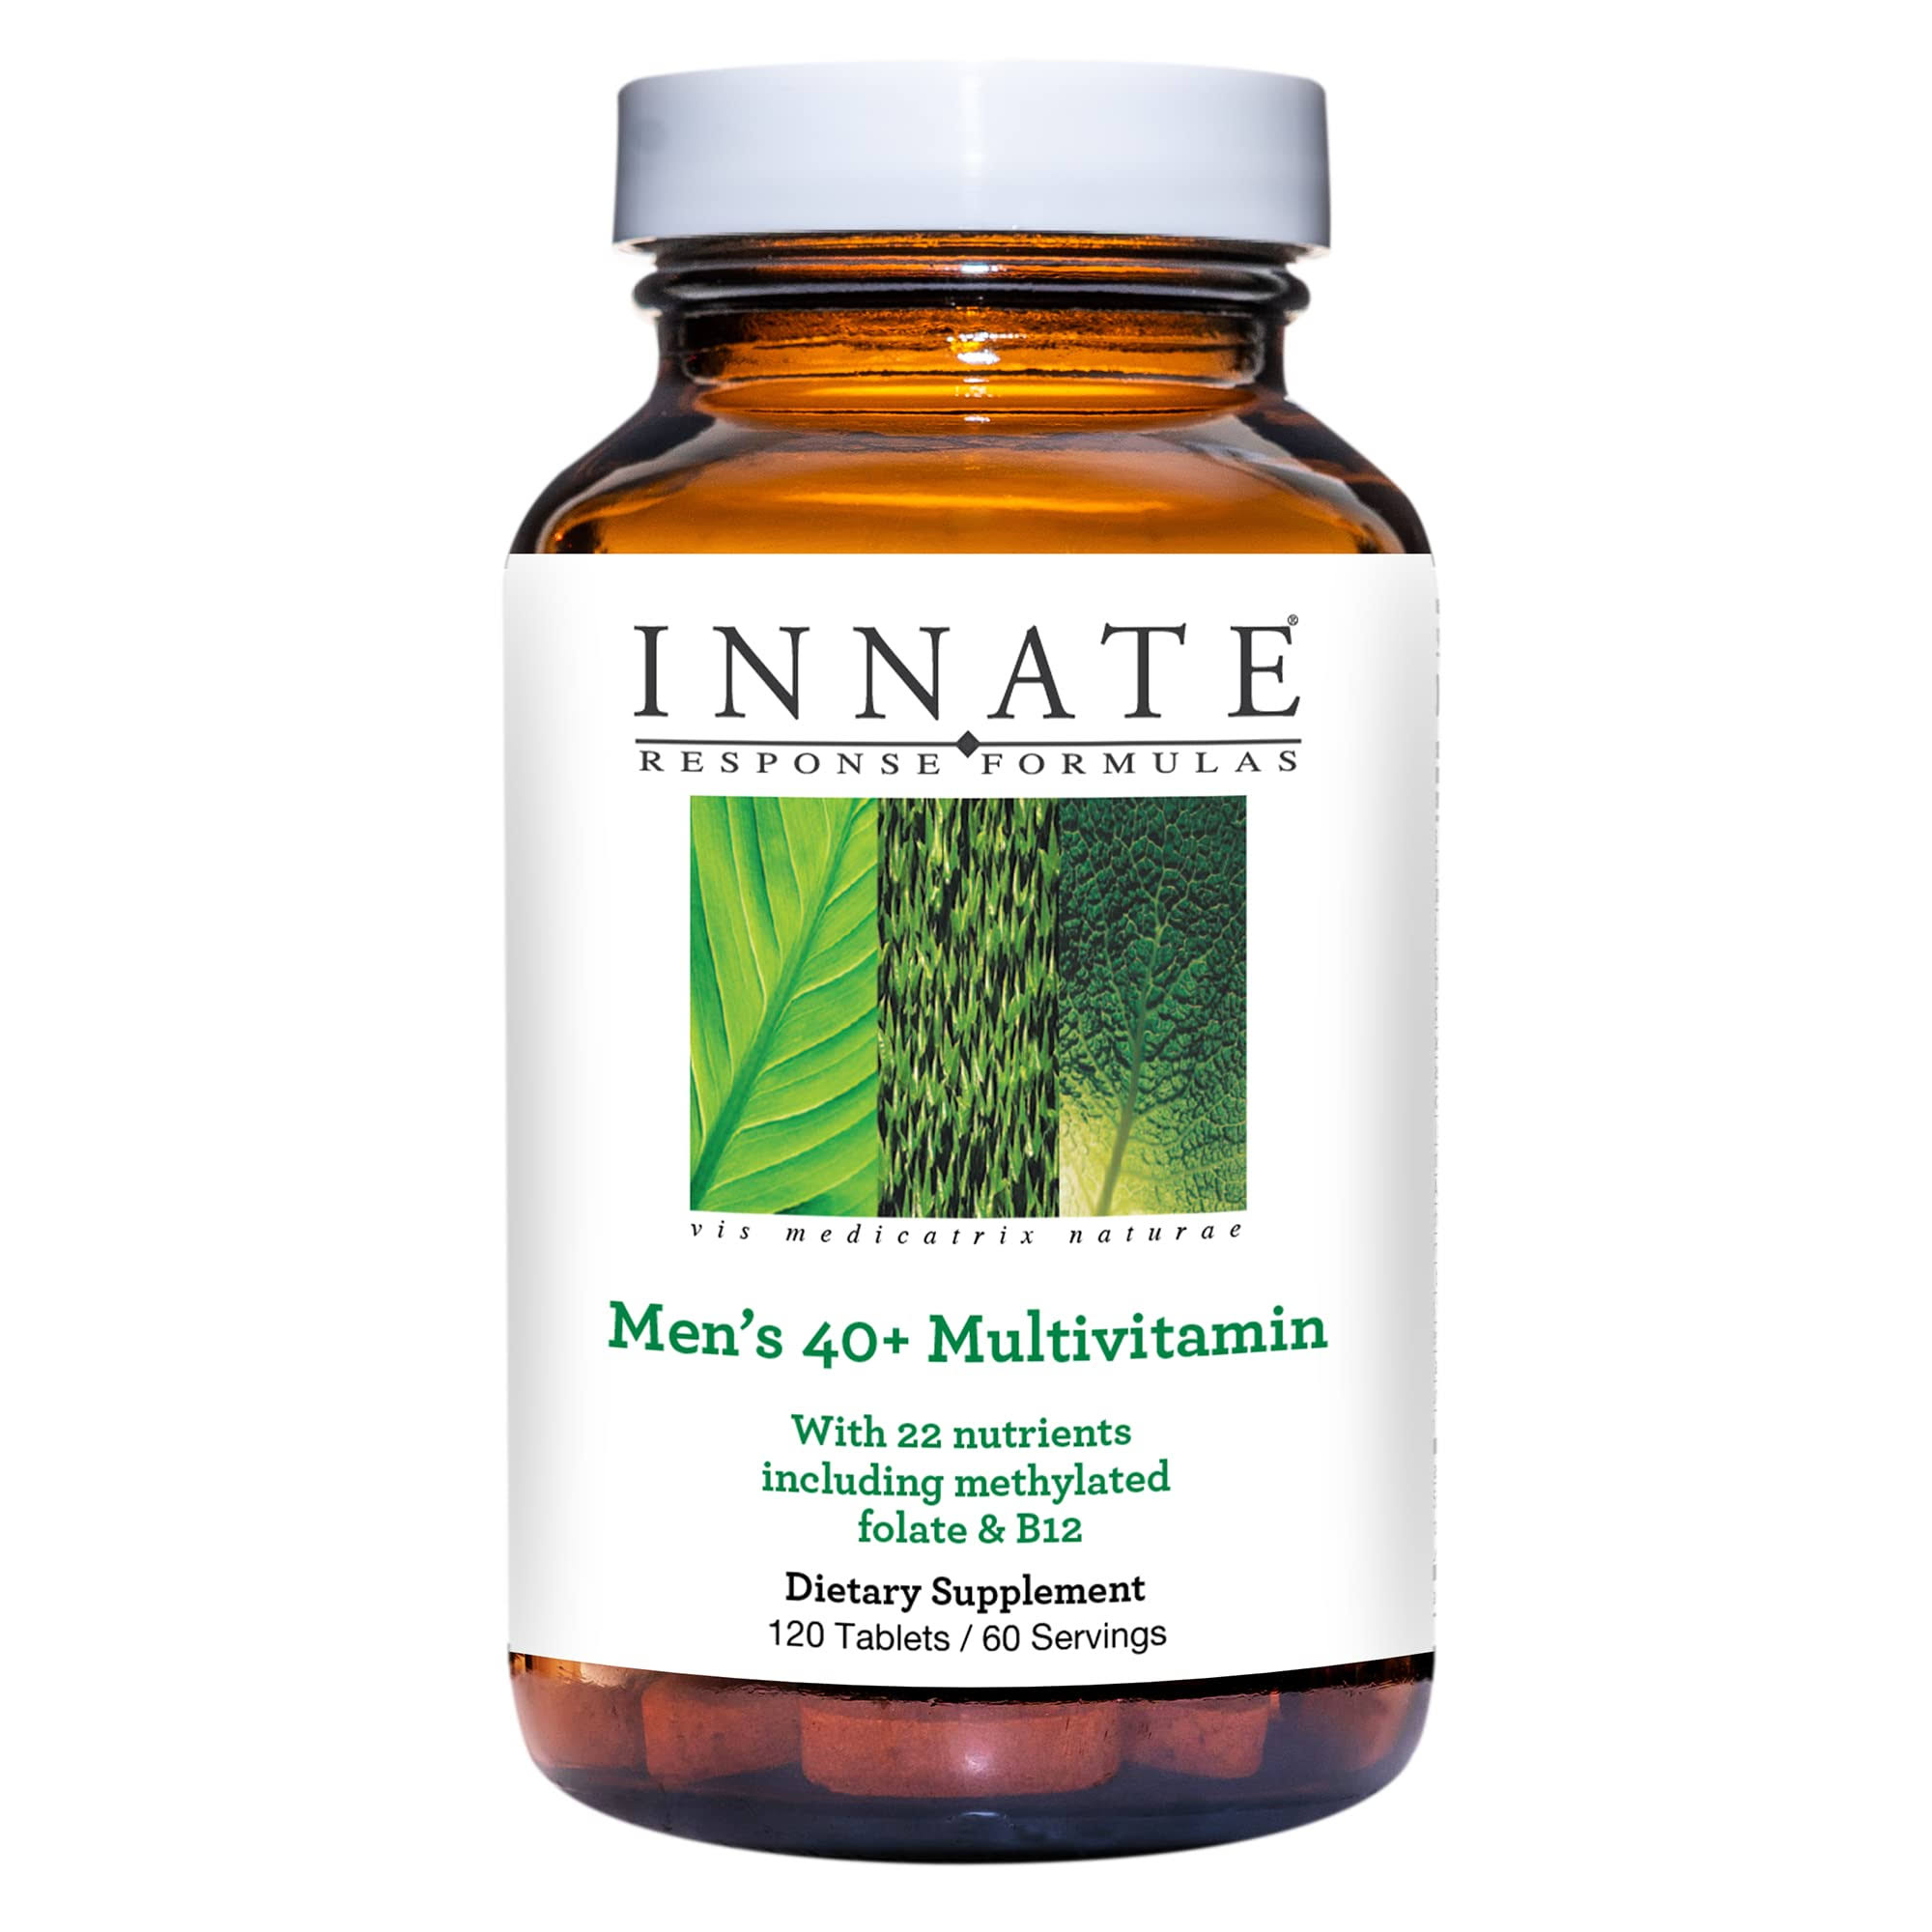 Innate Response Formulas Men's 40+ Multivitamin Supplement - 120 Tablets